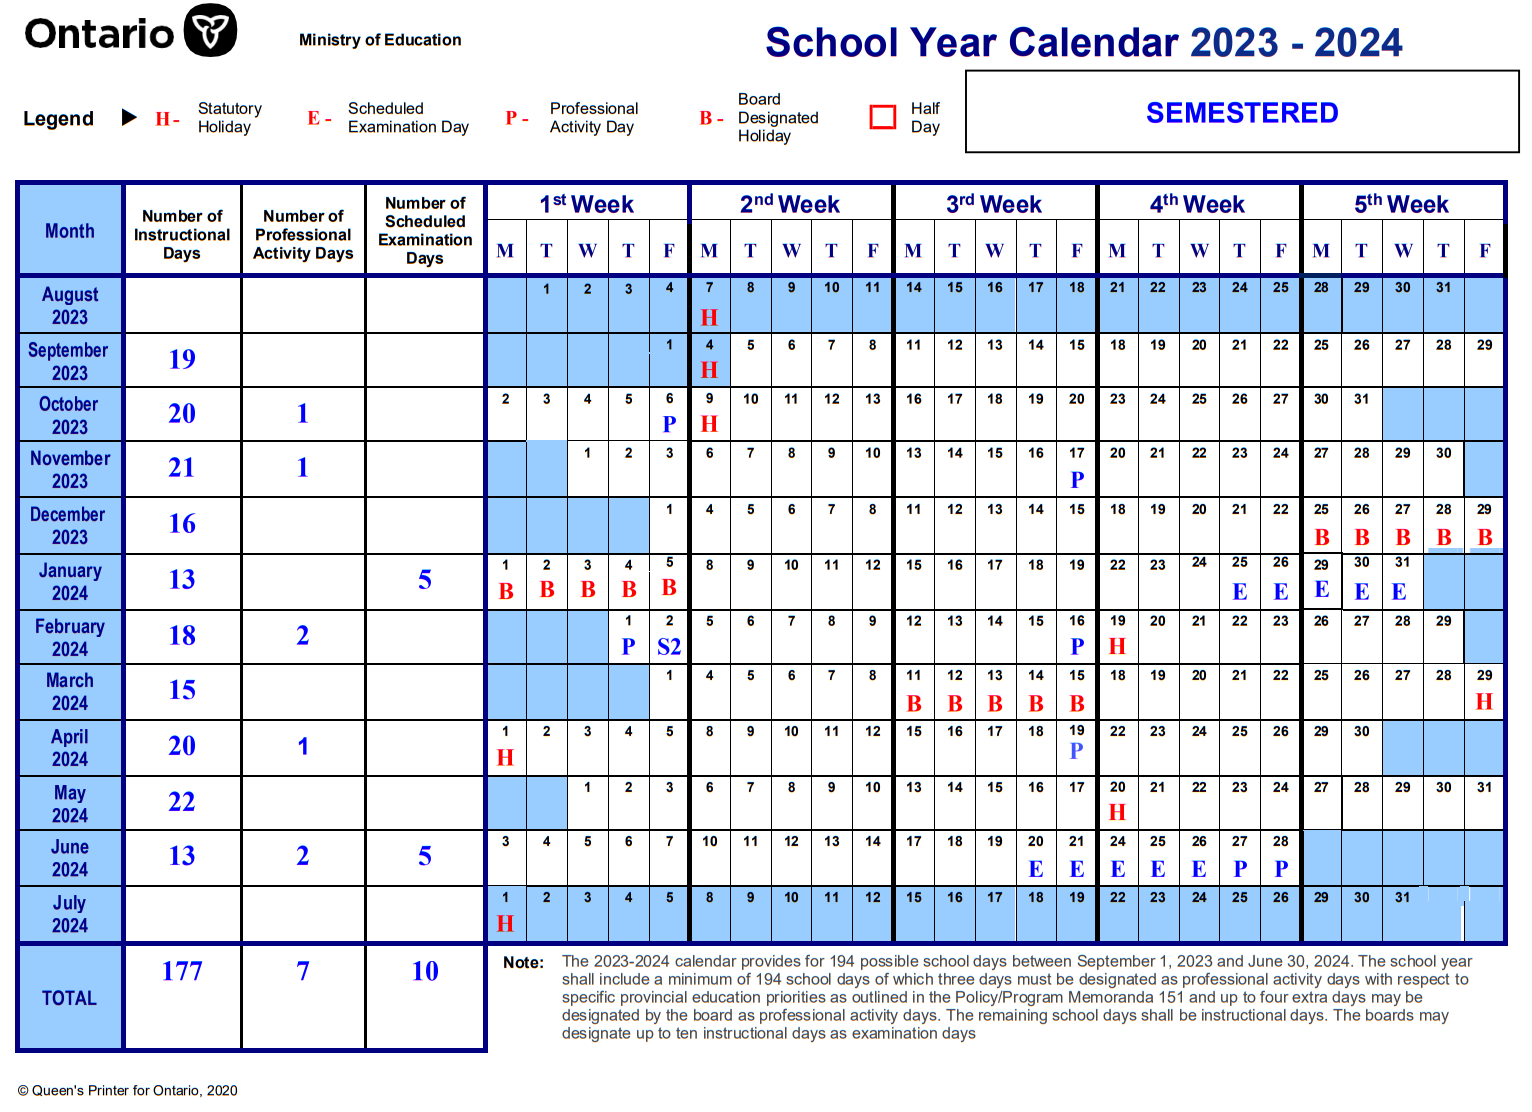 School Year Calendar 2023-2024